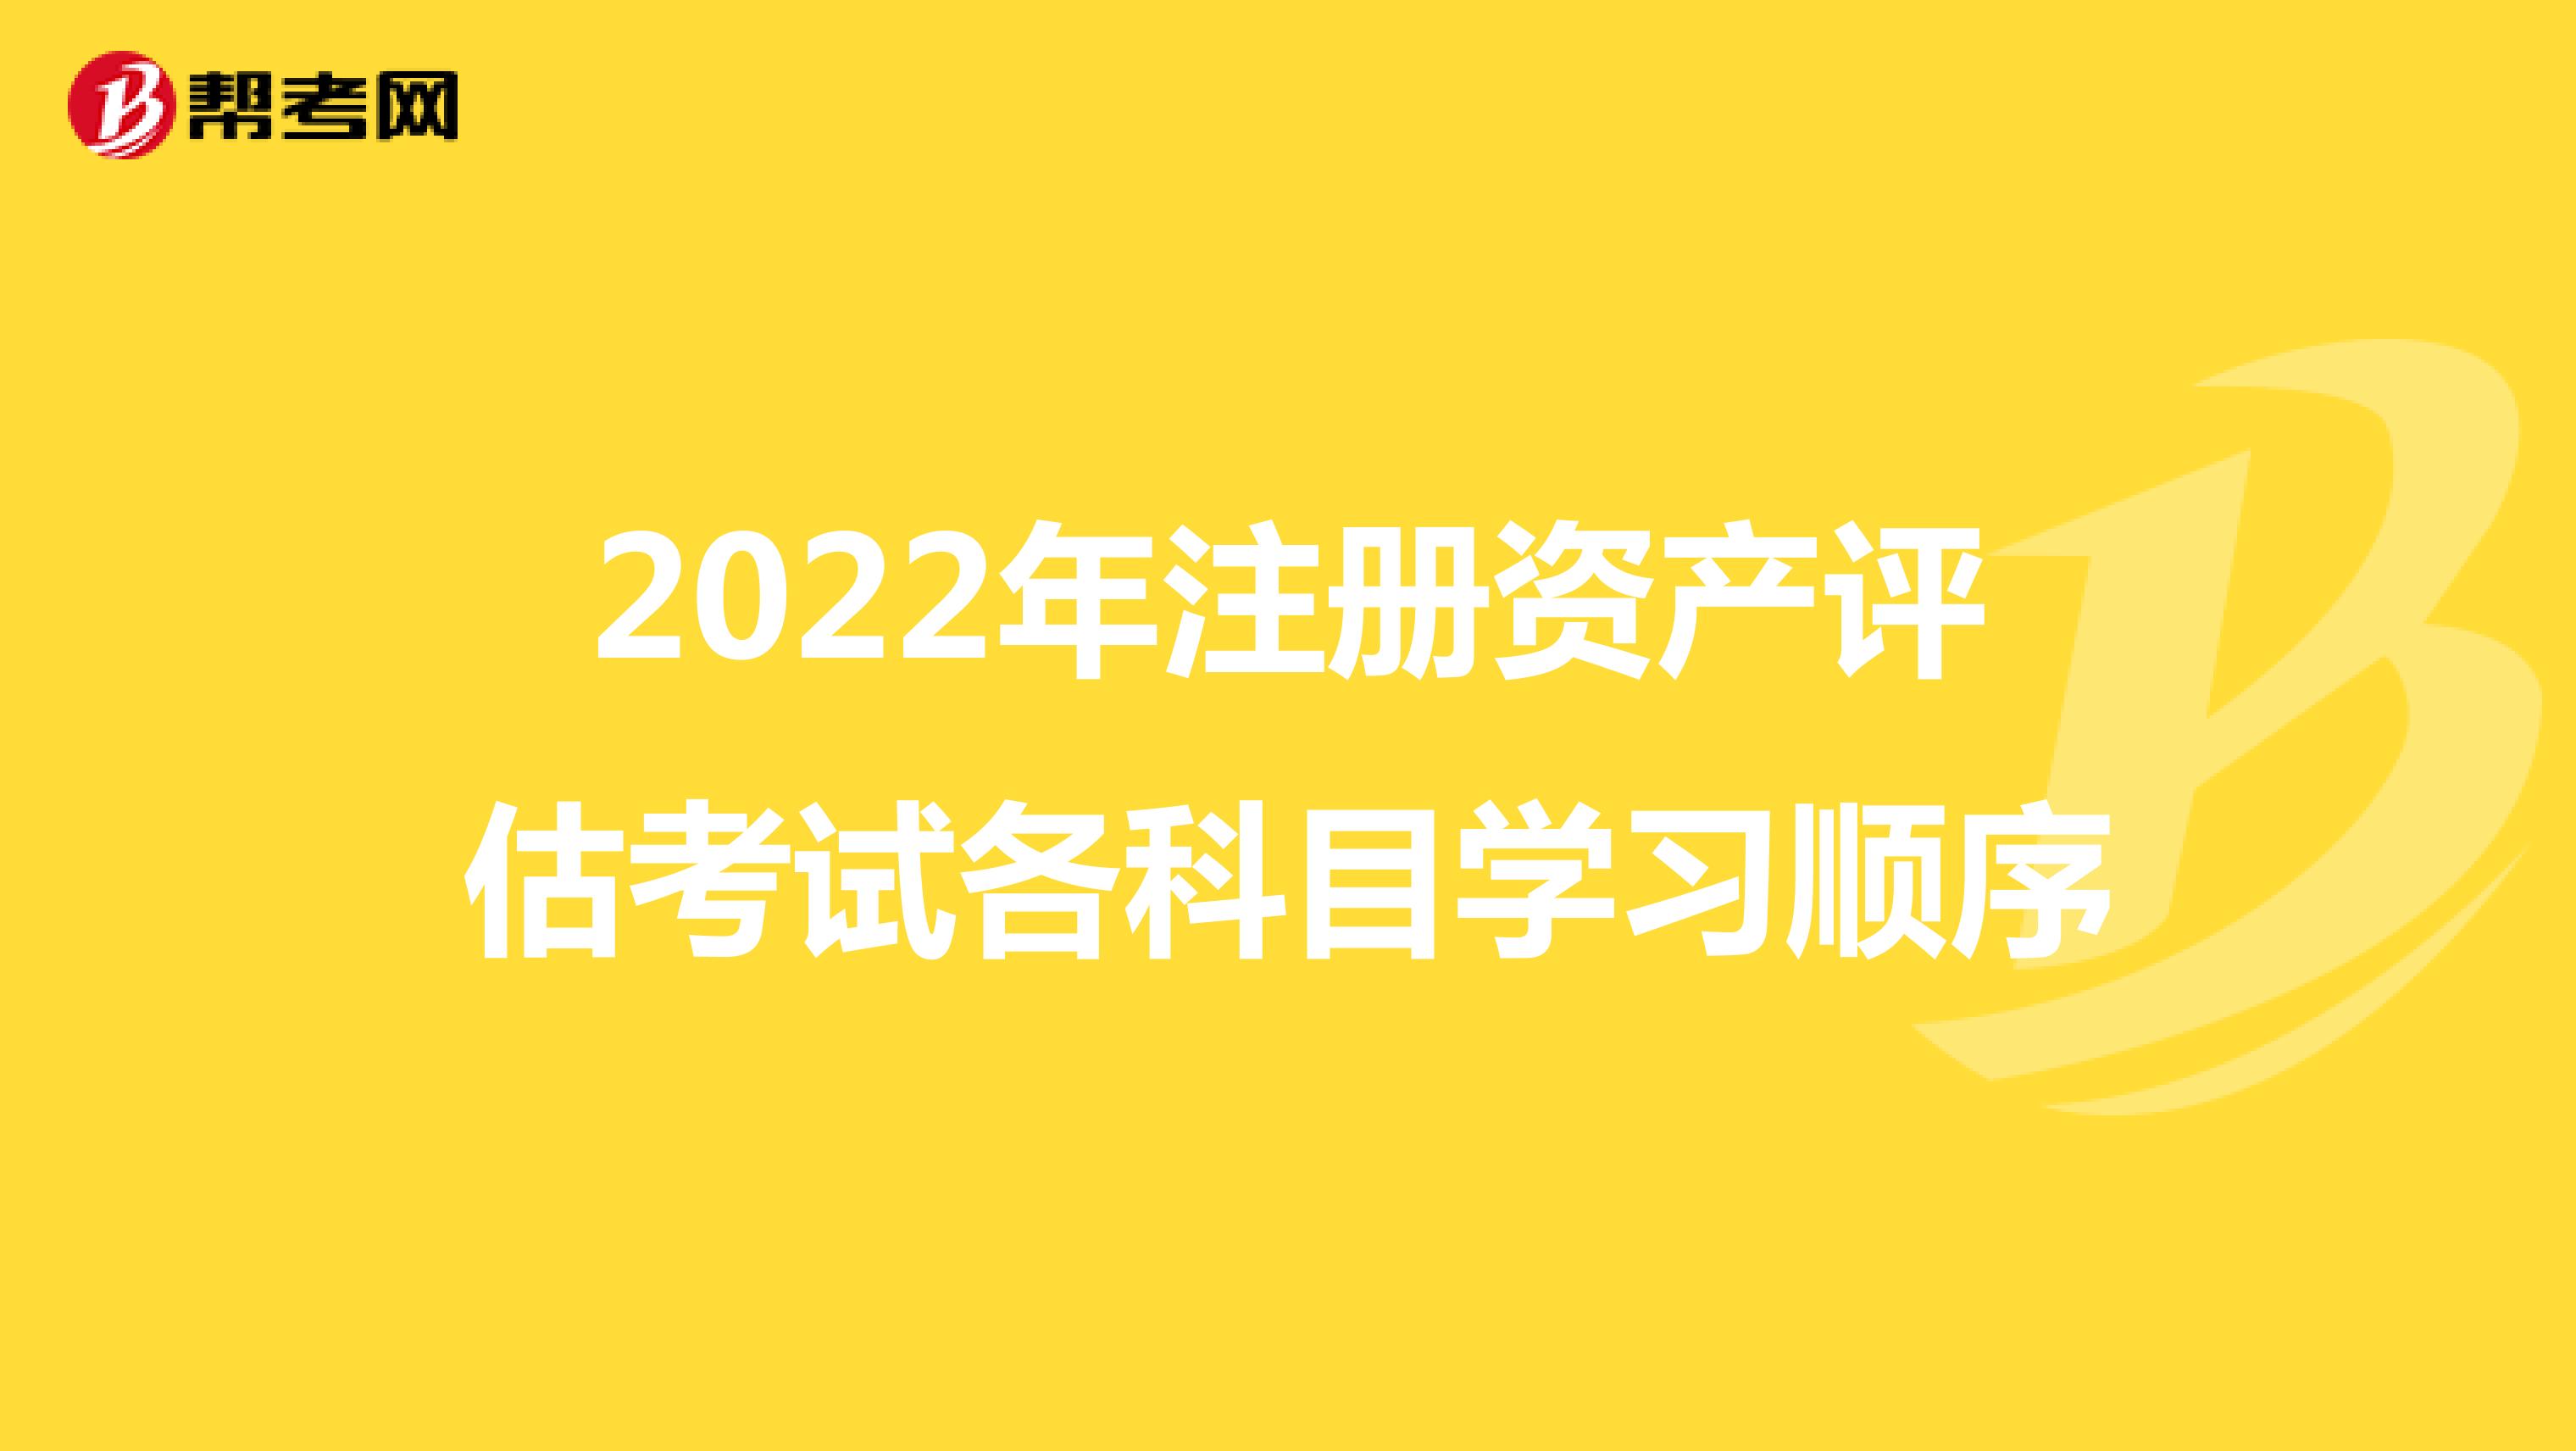 2022年注册资产评估考试各科目学习顺序